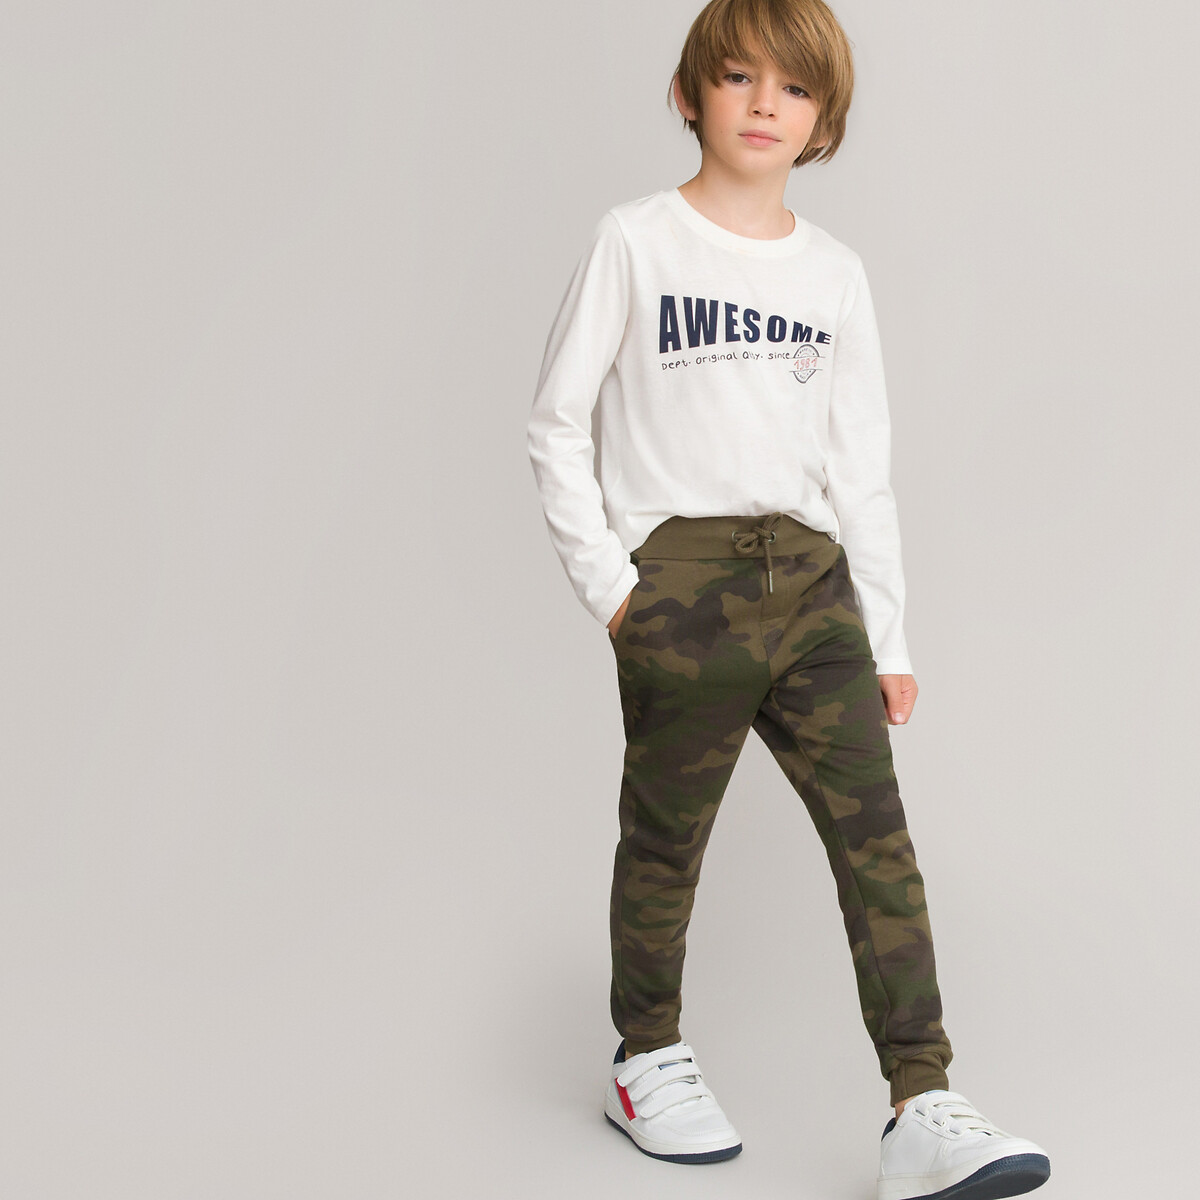 MSemis Pantalon Cargo Camouflage Enfant Garçon Jogging Pantalon Décontracté Taille Elastique 5-14 Ans